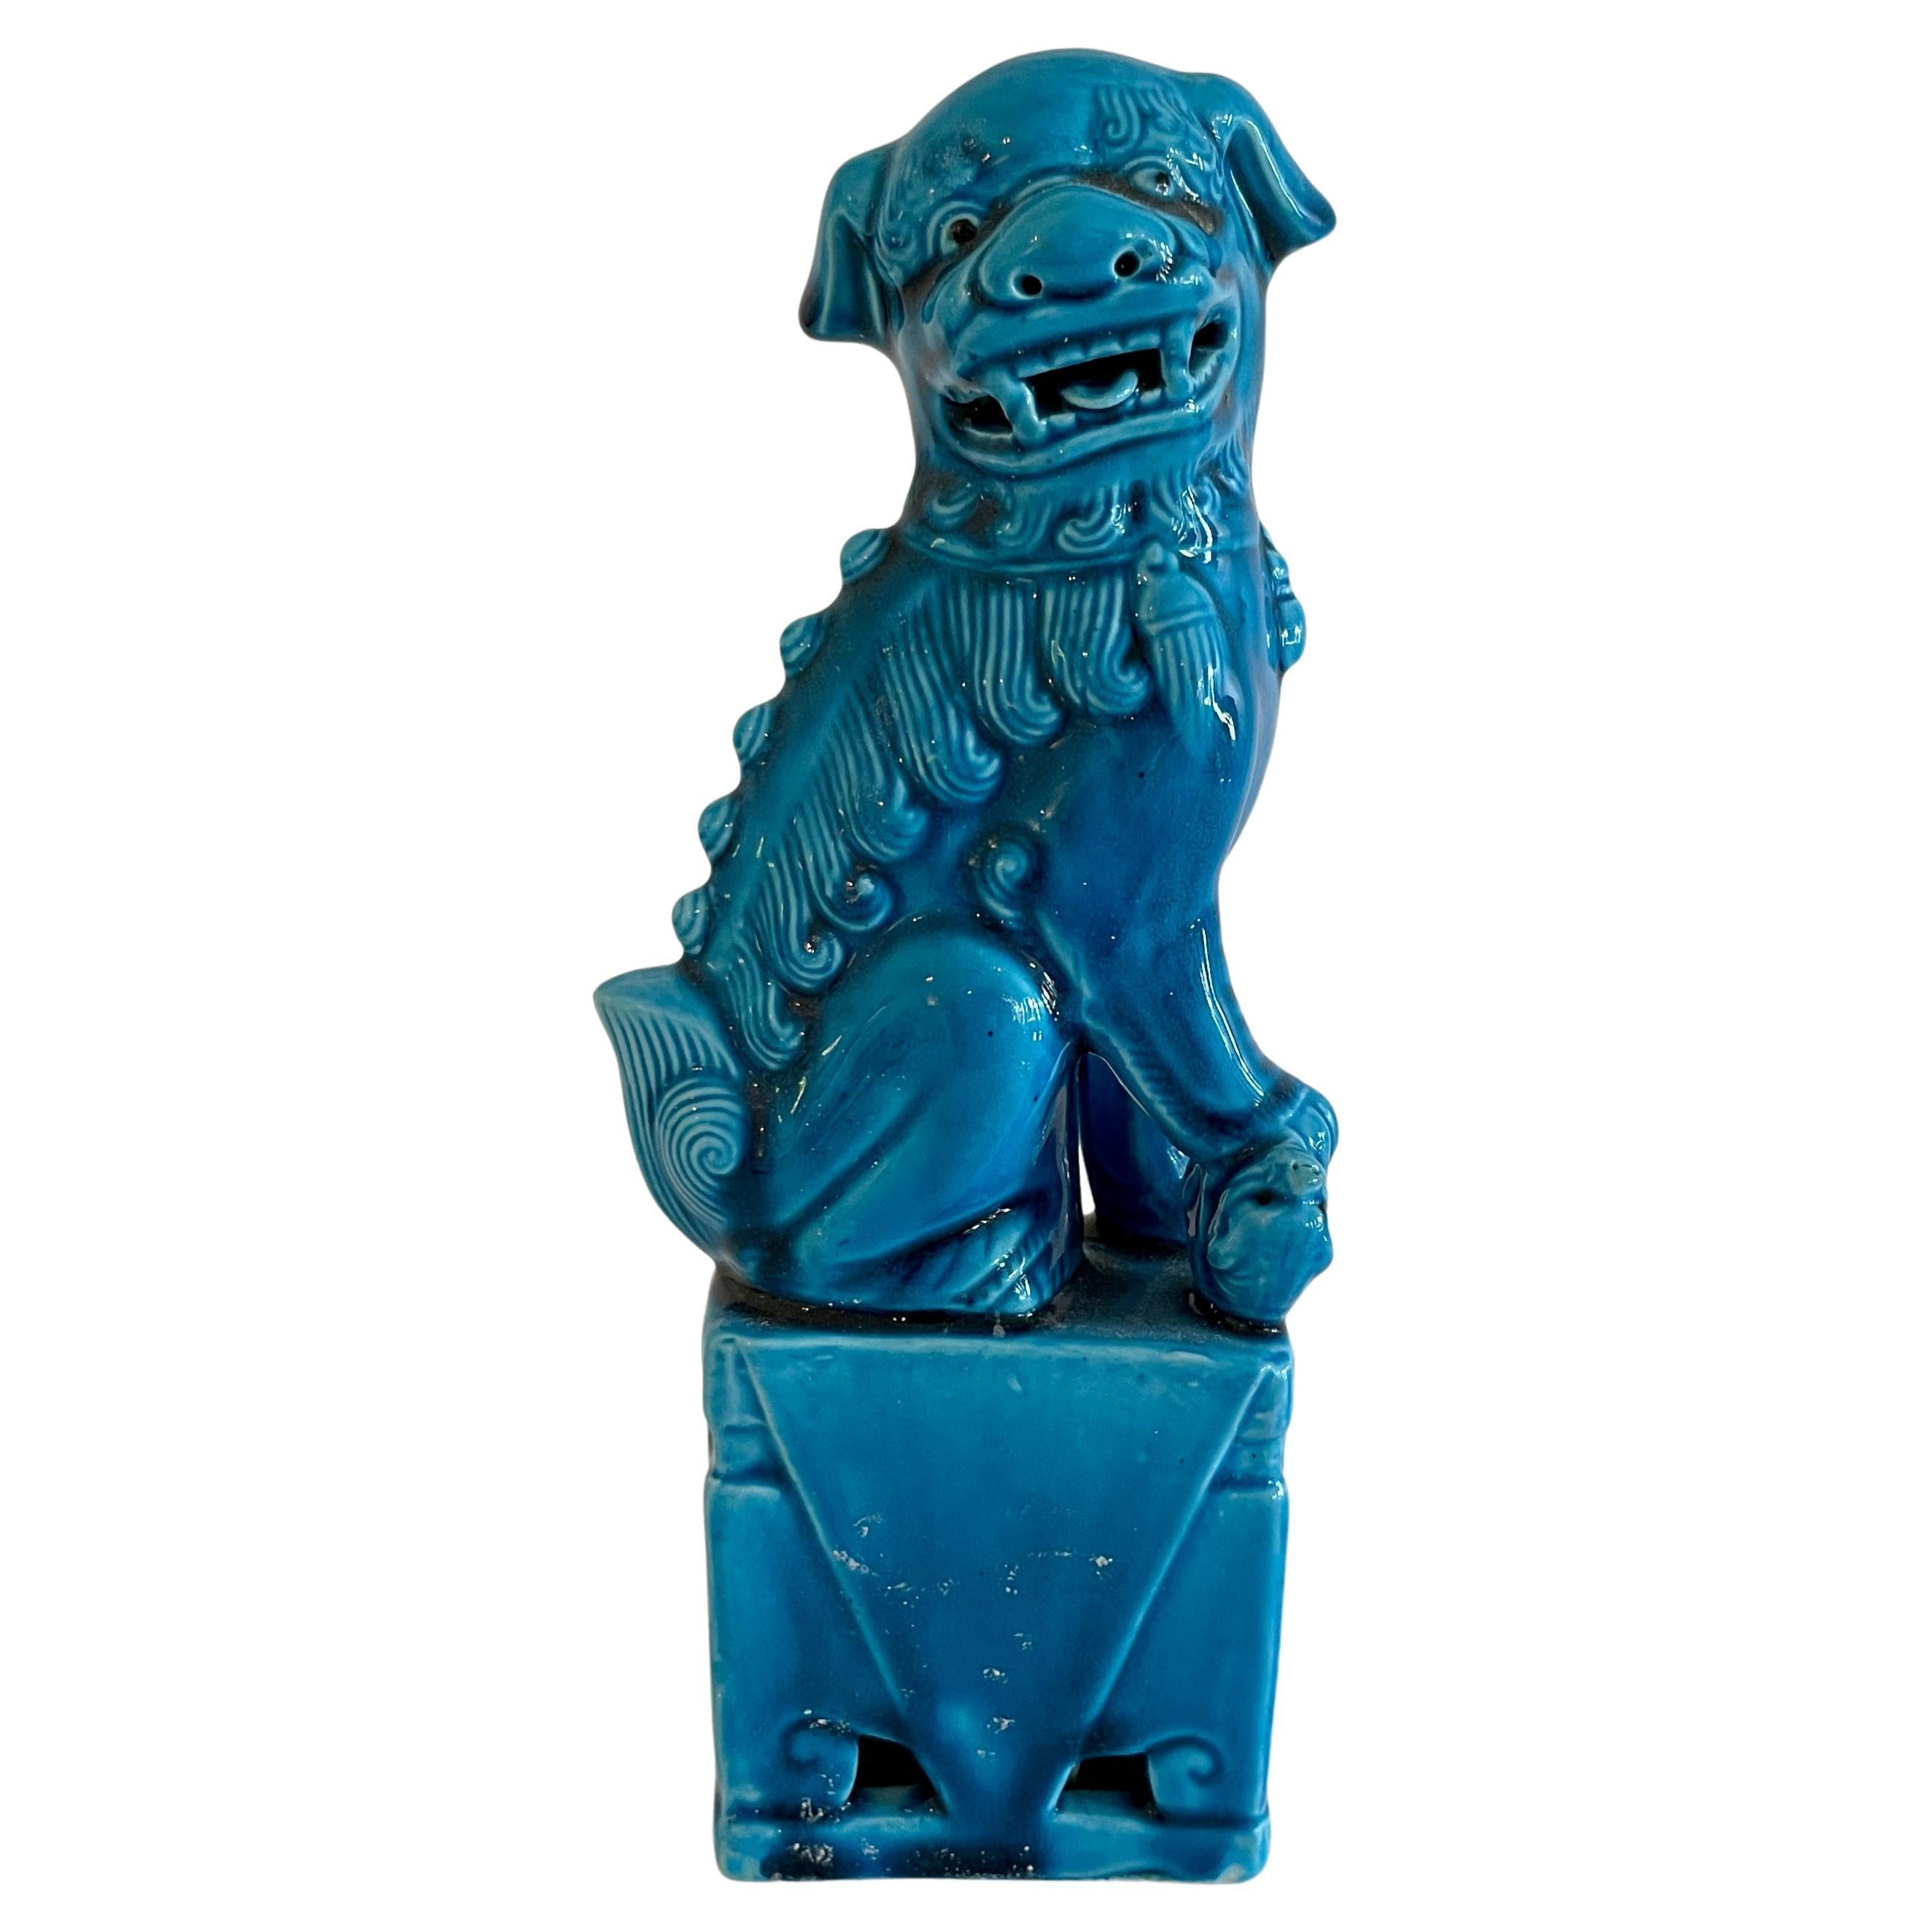 Chien Foo asiatique en céramique turquoise